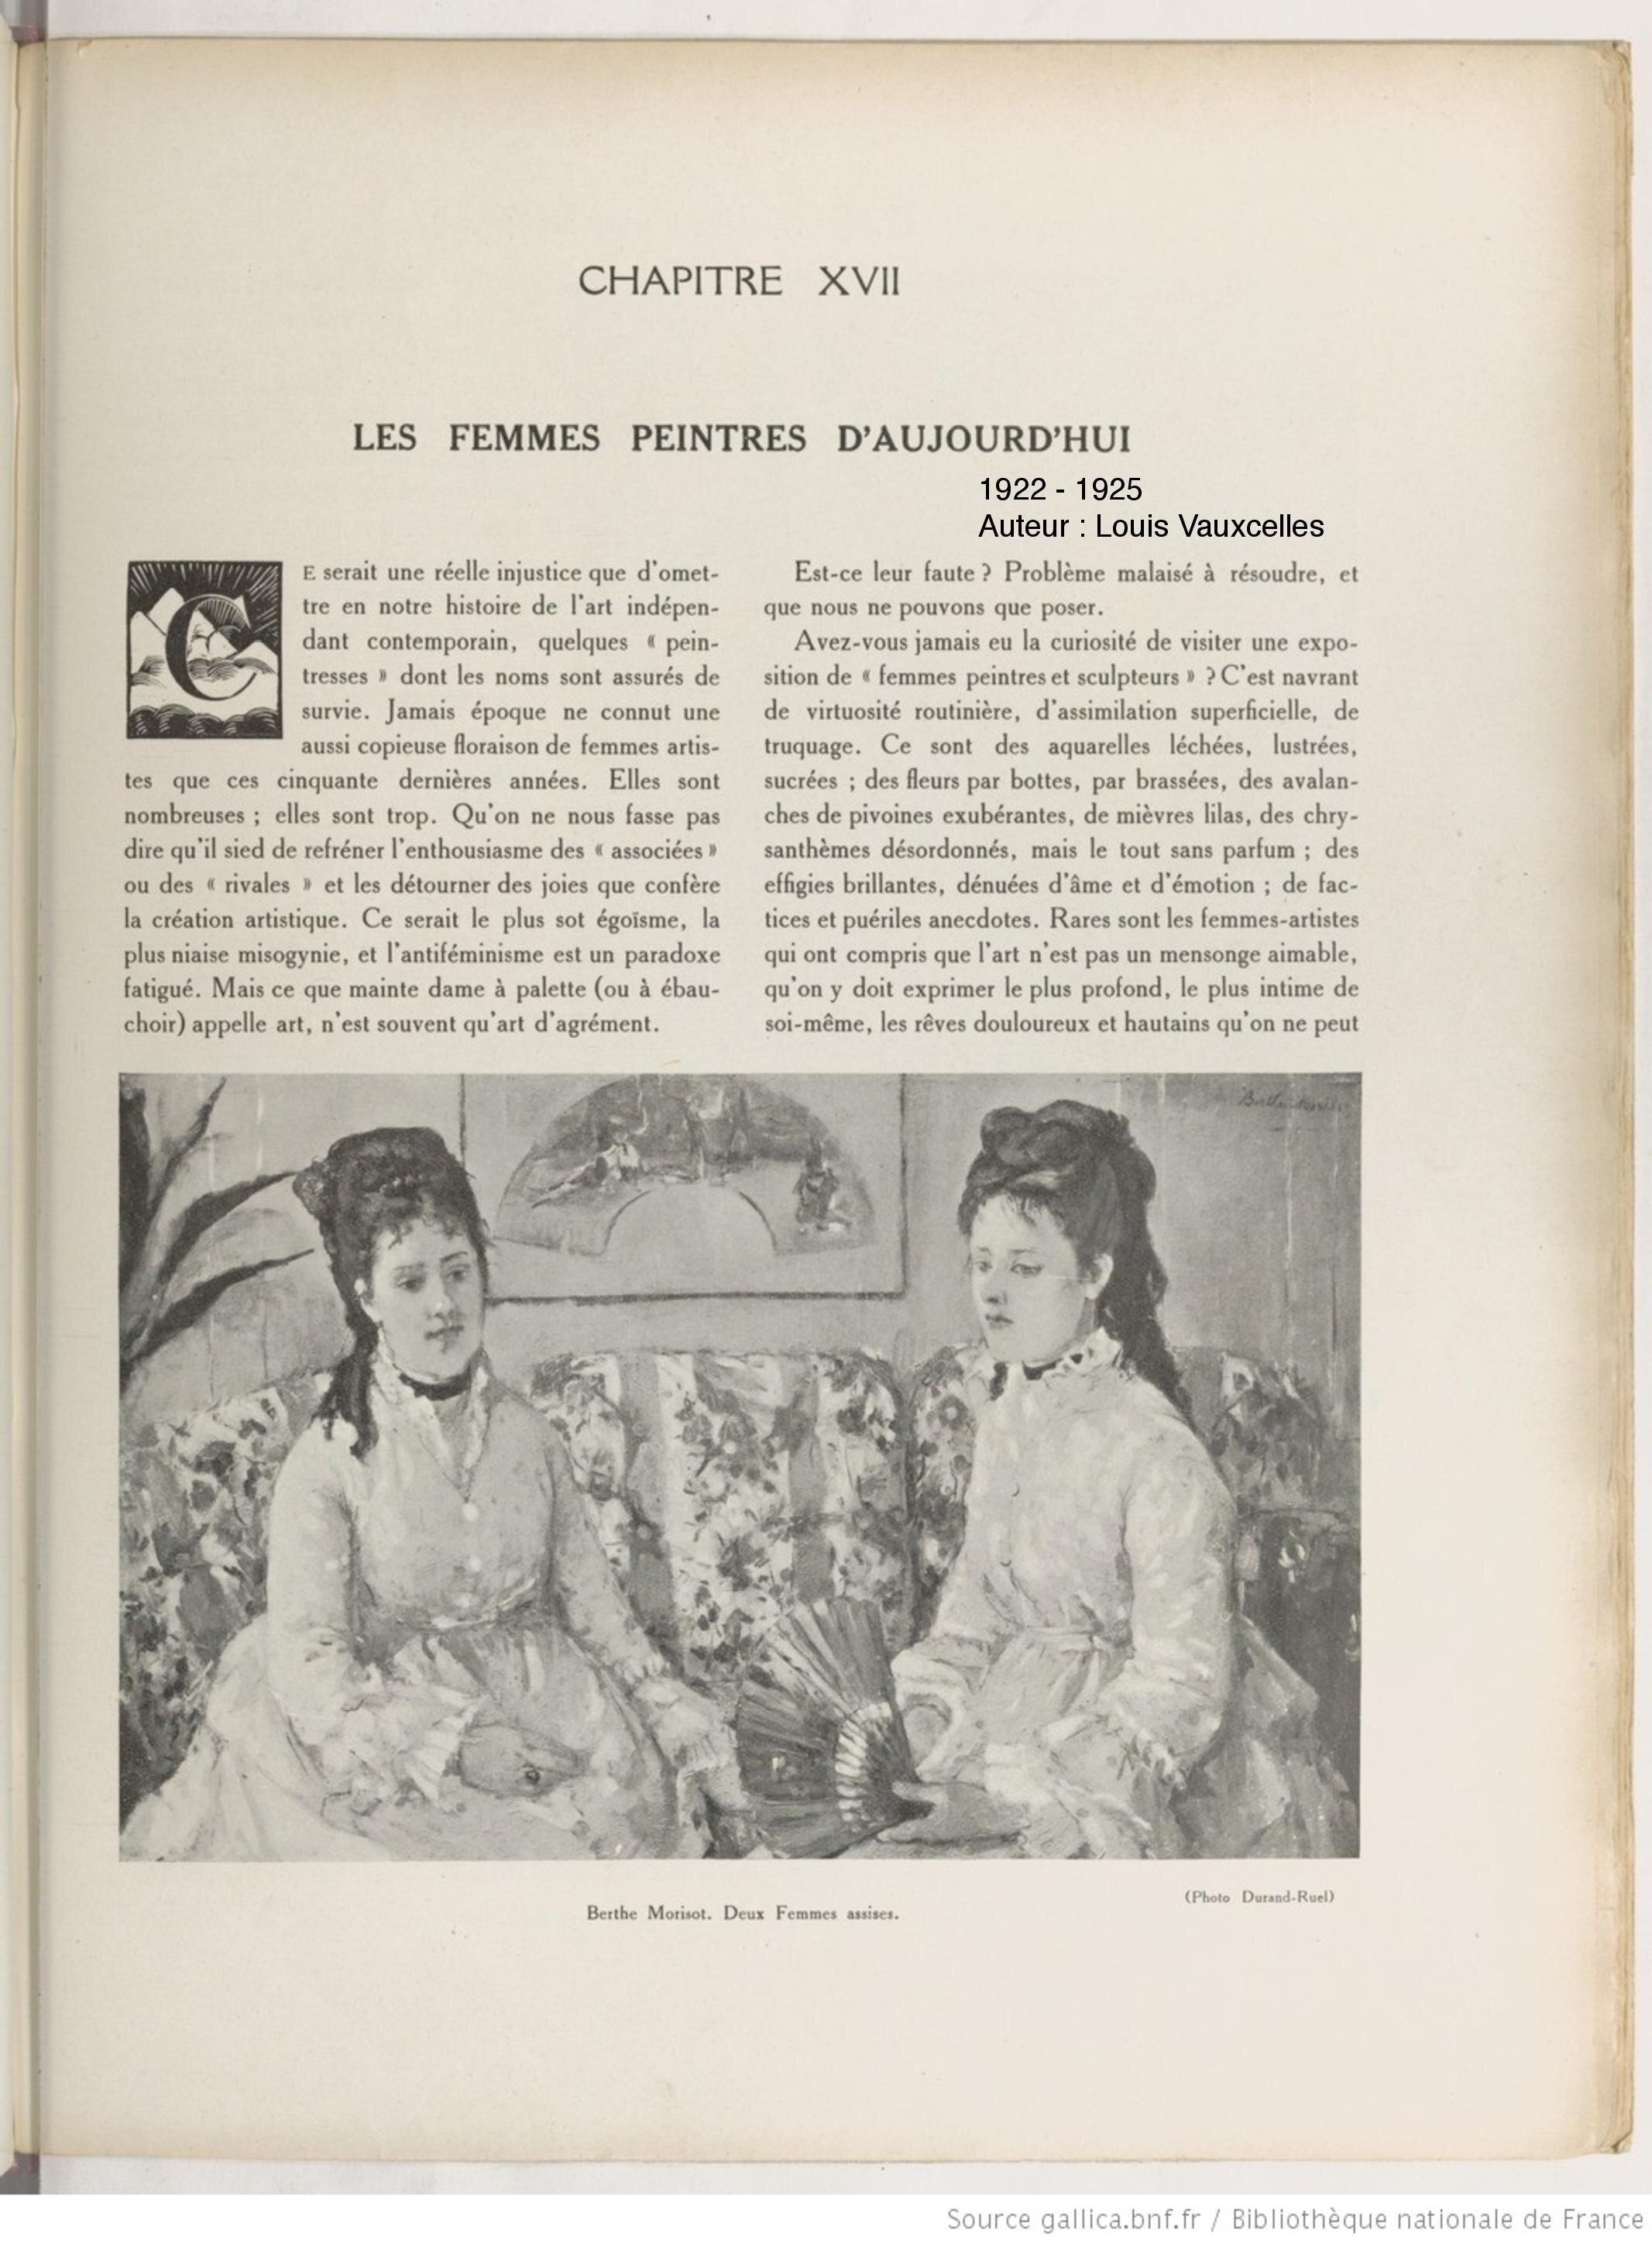 Histoire Générale de l'Art Français, Louis Vauxcelles, 1925